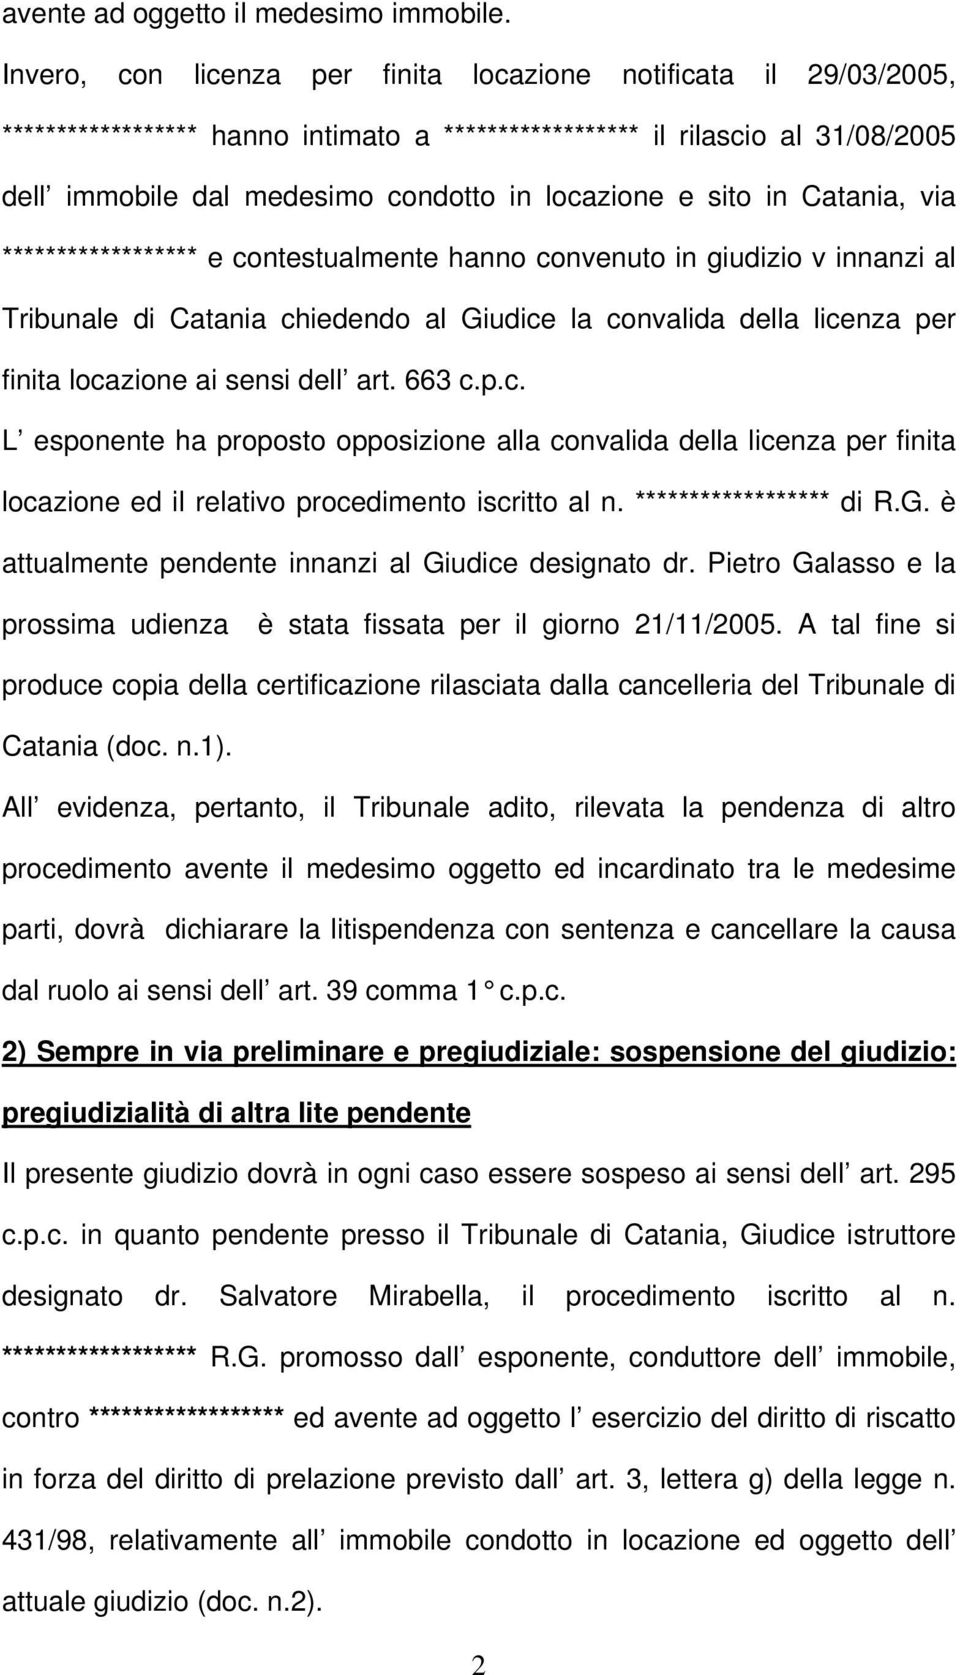 sito in Catania, via ****************** e contestualmente hanno convenuto in giudizio v innanzi al Tribunale di Catania chiedendo al Giudice la convalida della licenza per finita locazione ai sensi